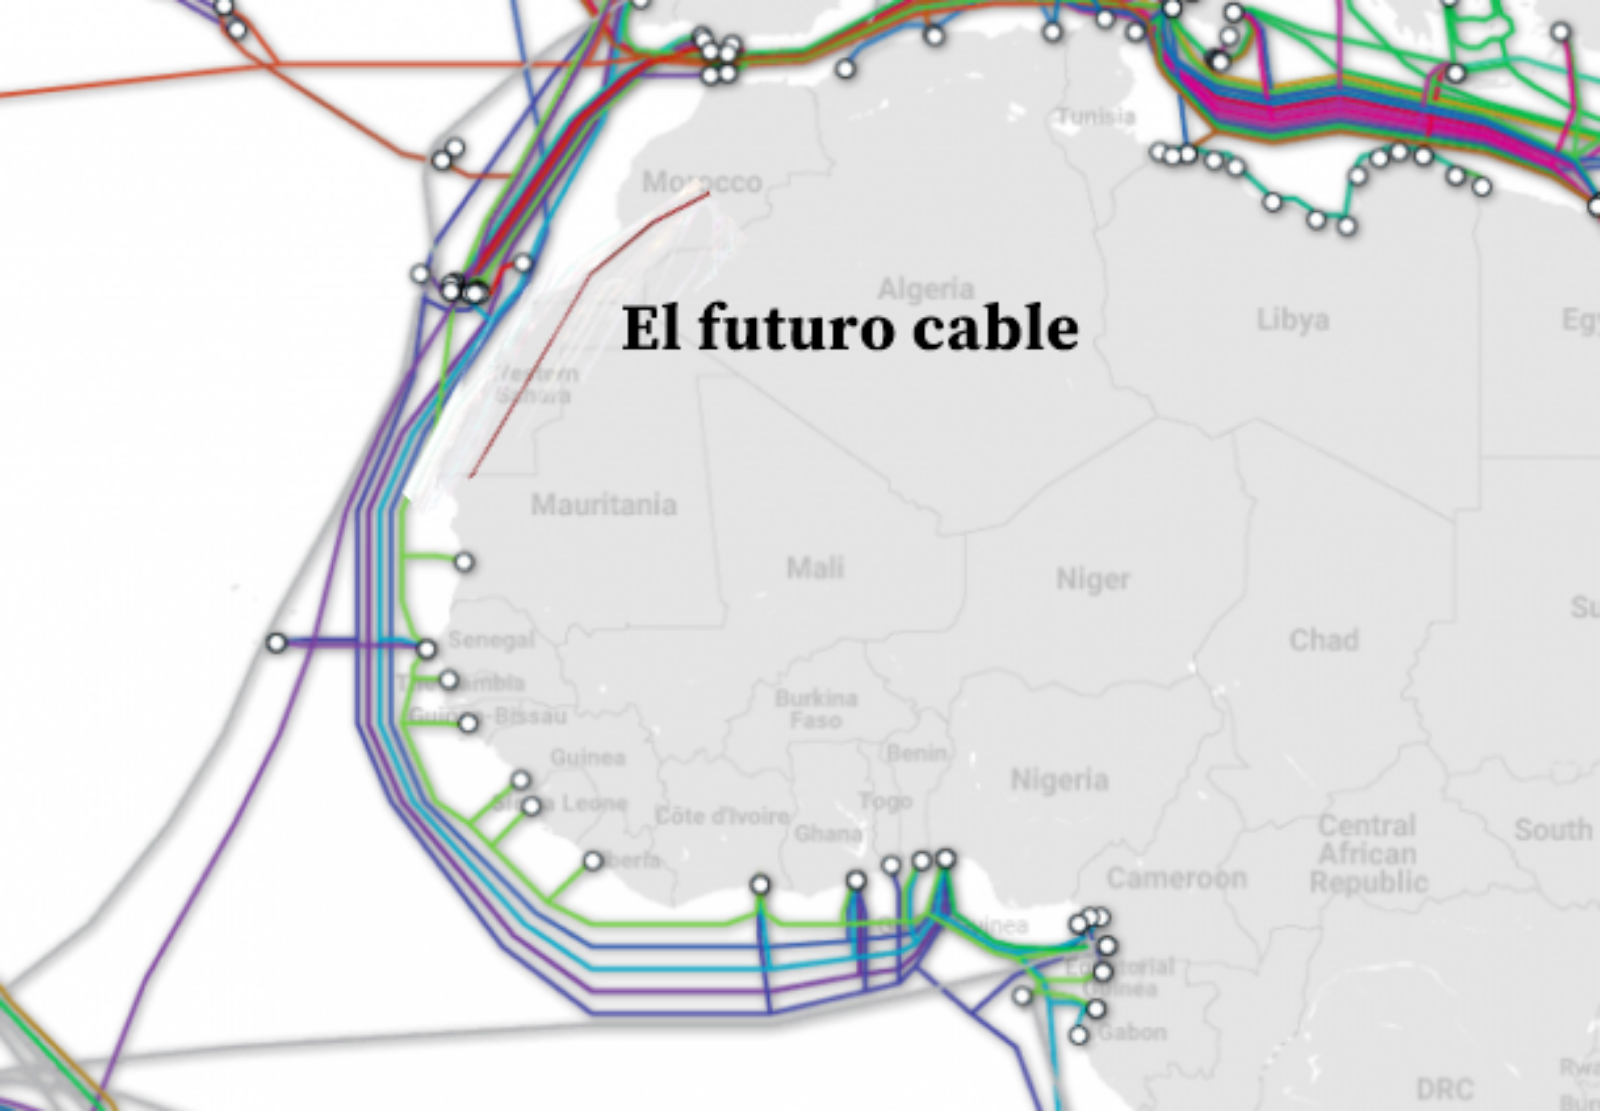 كابل إنترنت بين المغرب وموريتانيا عبر الصحراء ينال موافقة الرئيس الغزاوني ويثير سعار البوليساريو